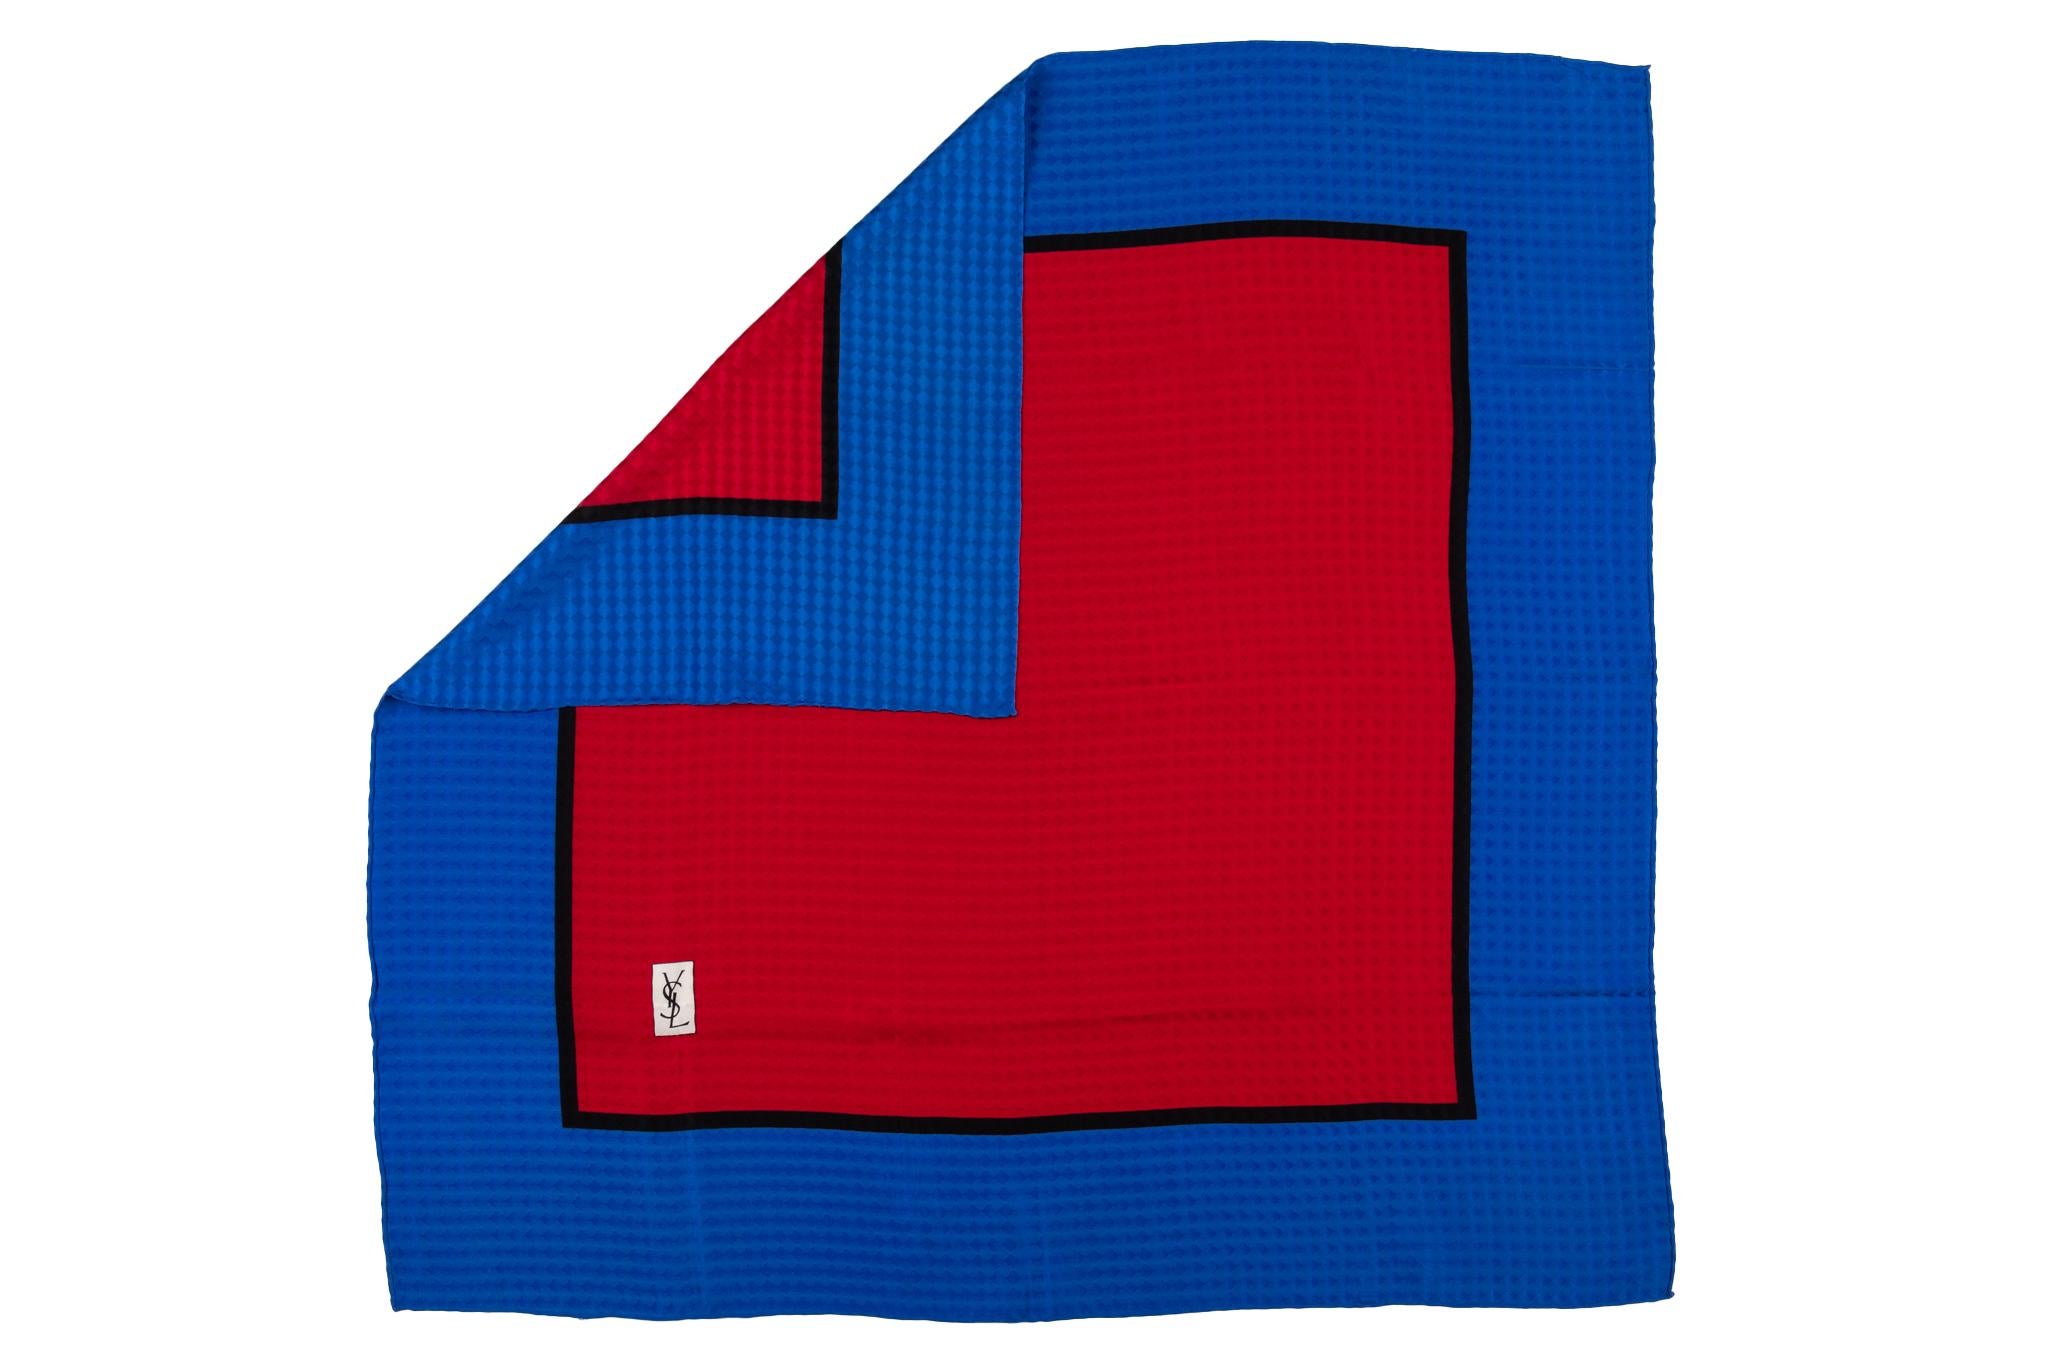 Foulard en soie texturée YSL vintage color block. Combinaison de couleurs rouge et bleu électrique.
Pas de boîte. Pas de Label.